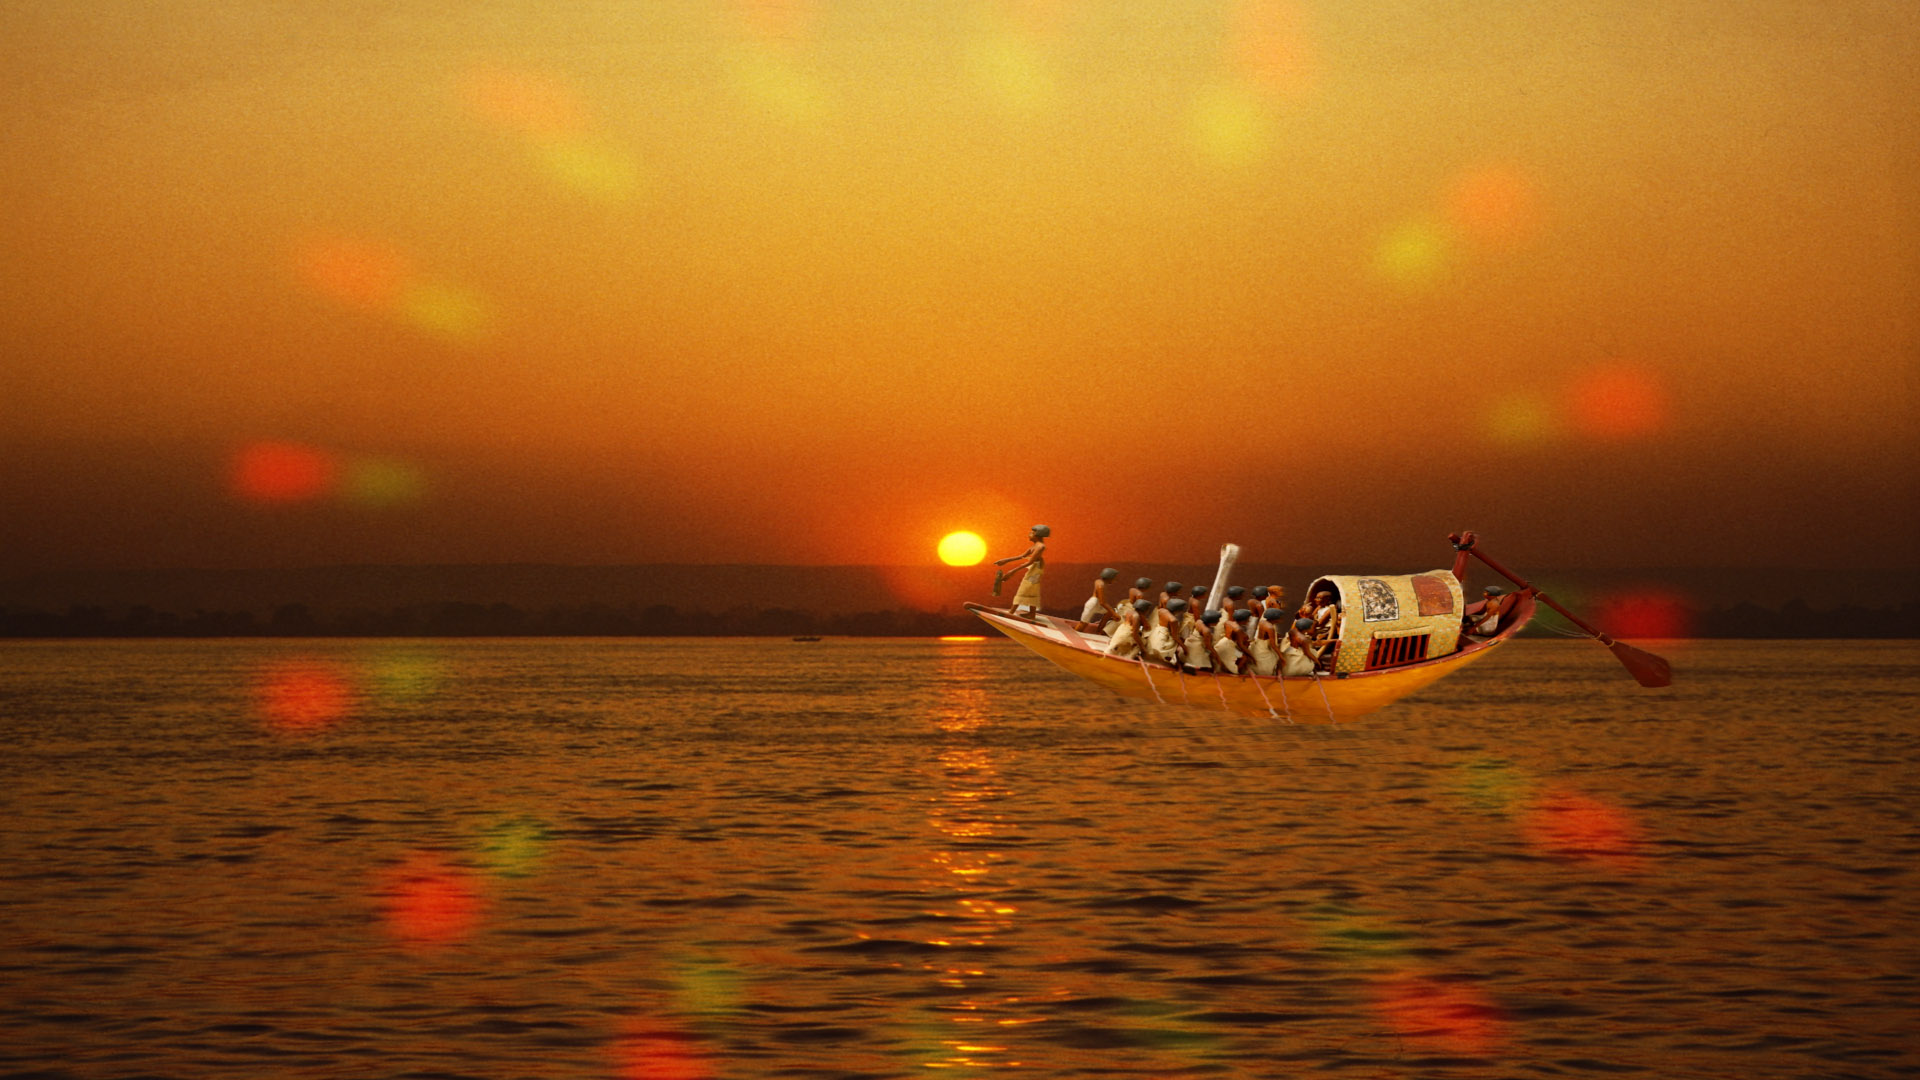 Nile-Sunset-Boat